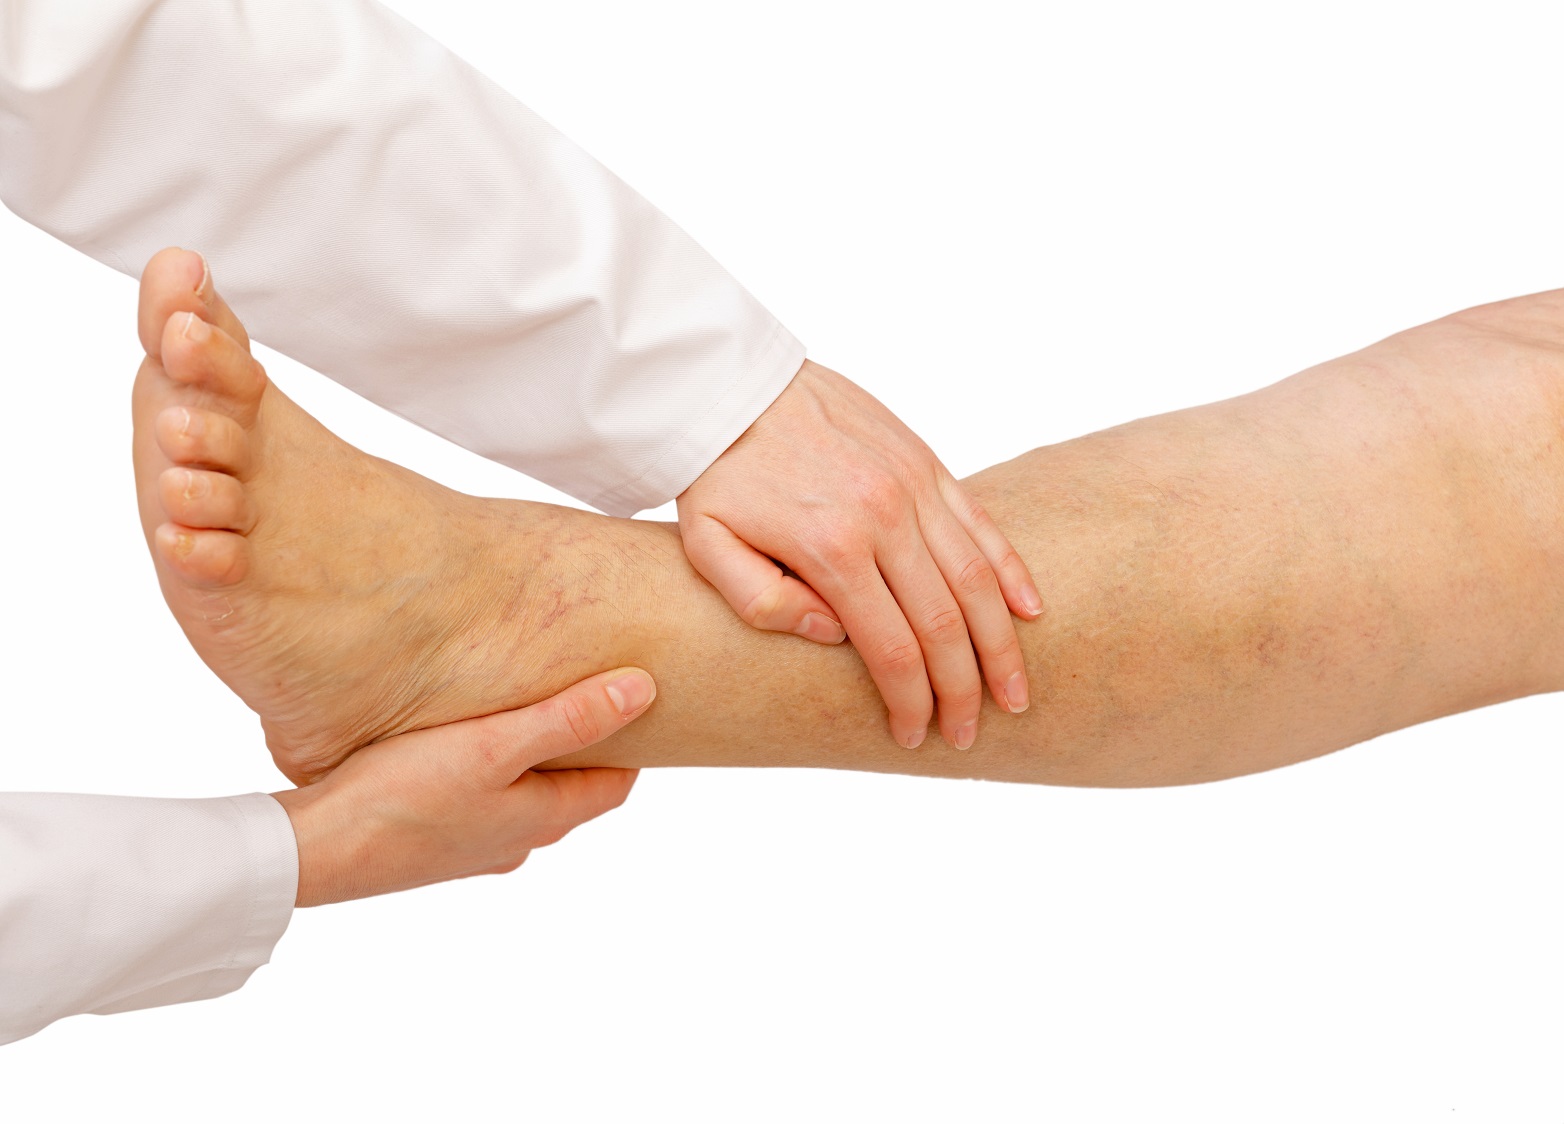 Mit jelez a trombózis utáni lábfájdalom?